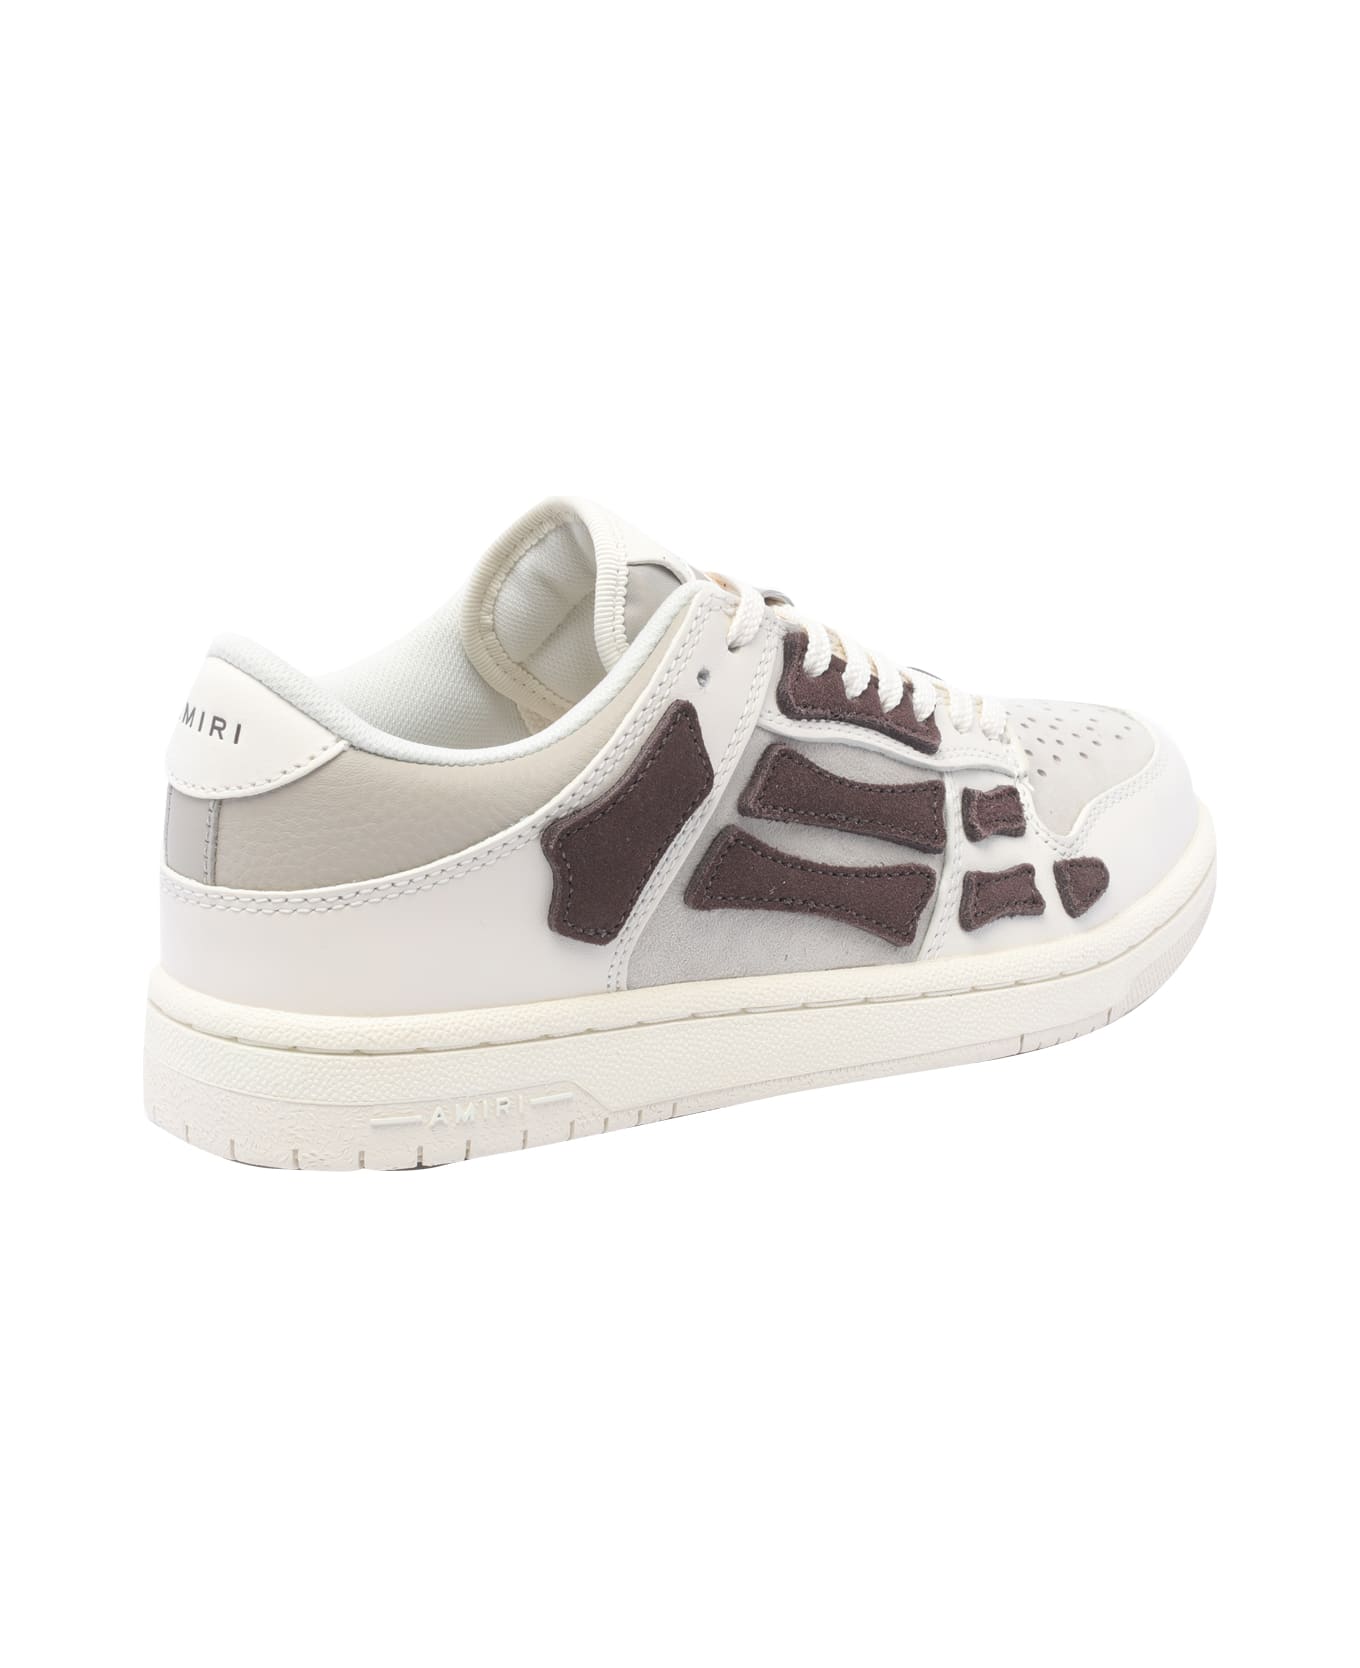 AMIRI Skel Low Top Sneakers - White